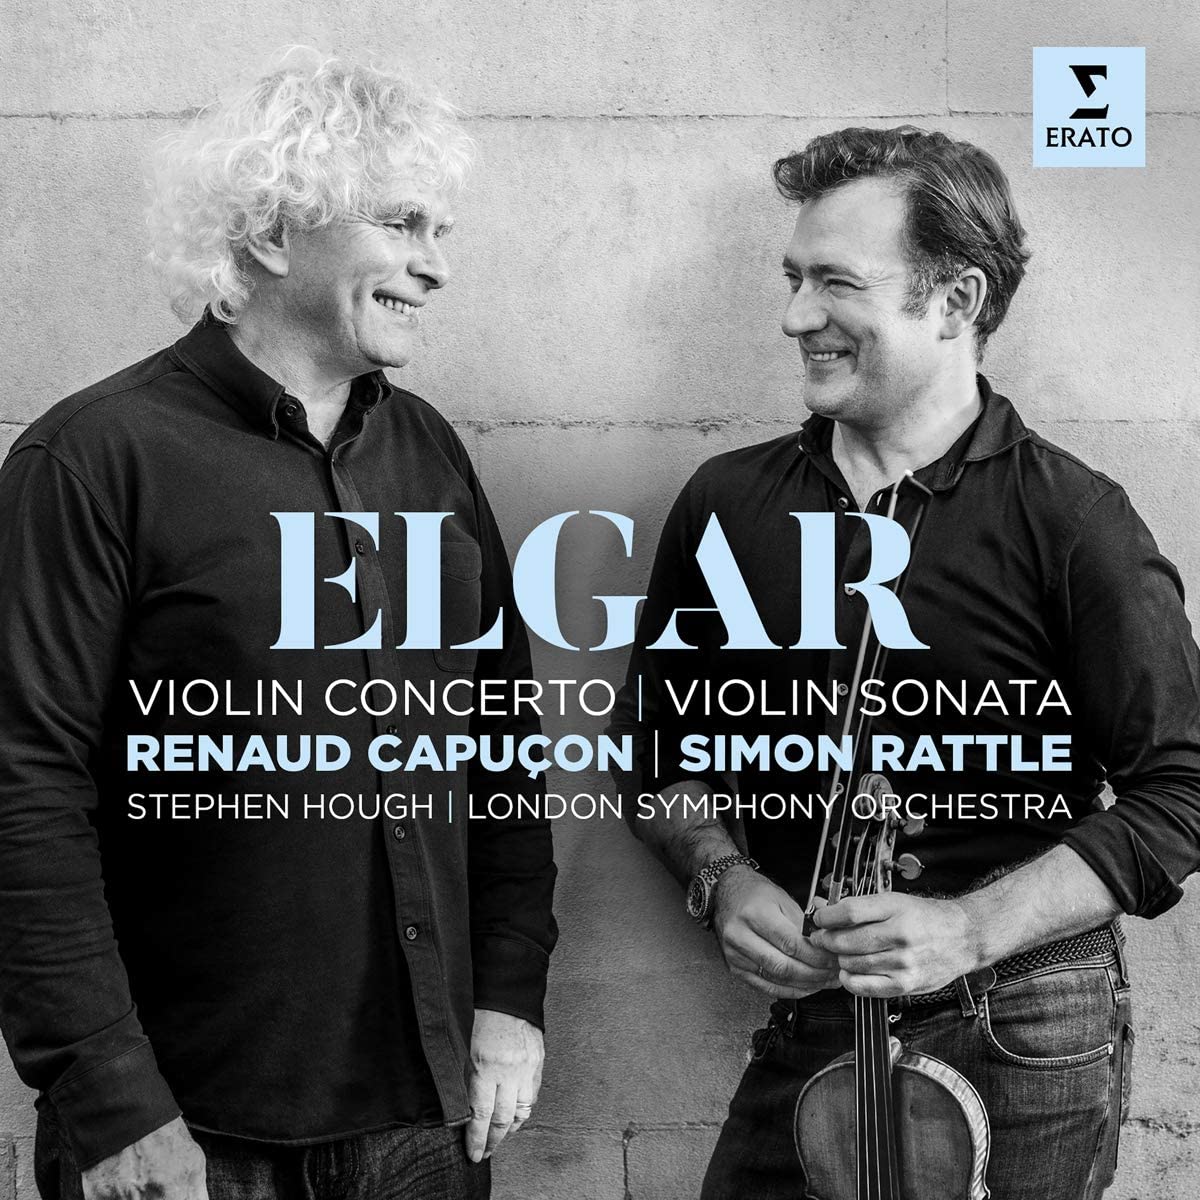 Elgar: Violin Concerto and Violin Sonata | Renaud Capucon, Simon Rattle and poza noua